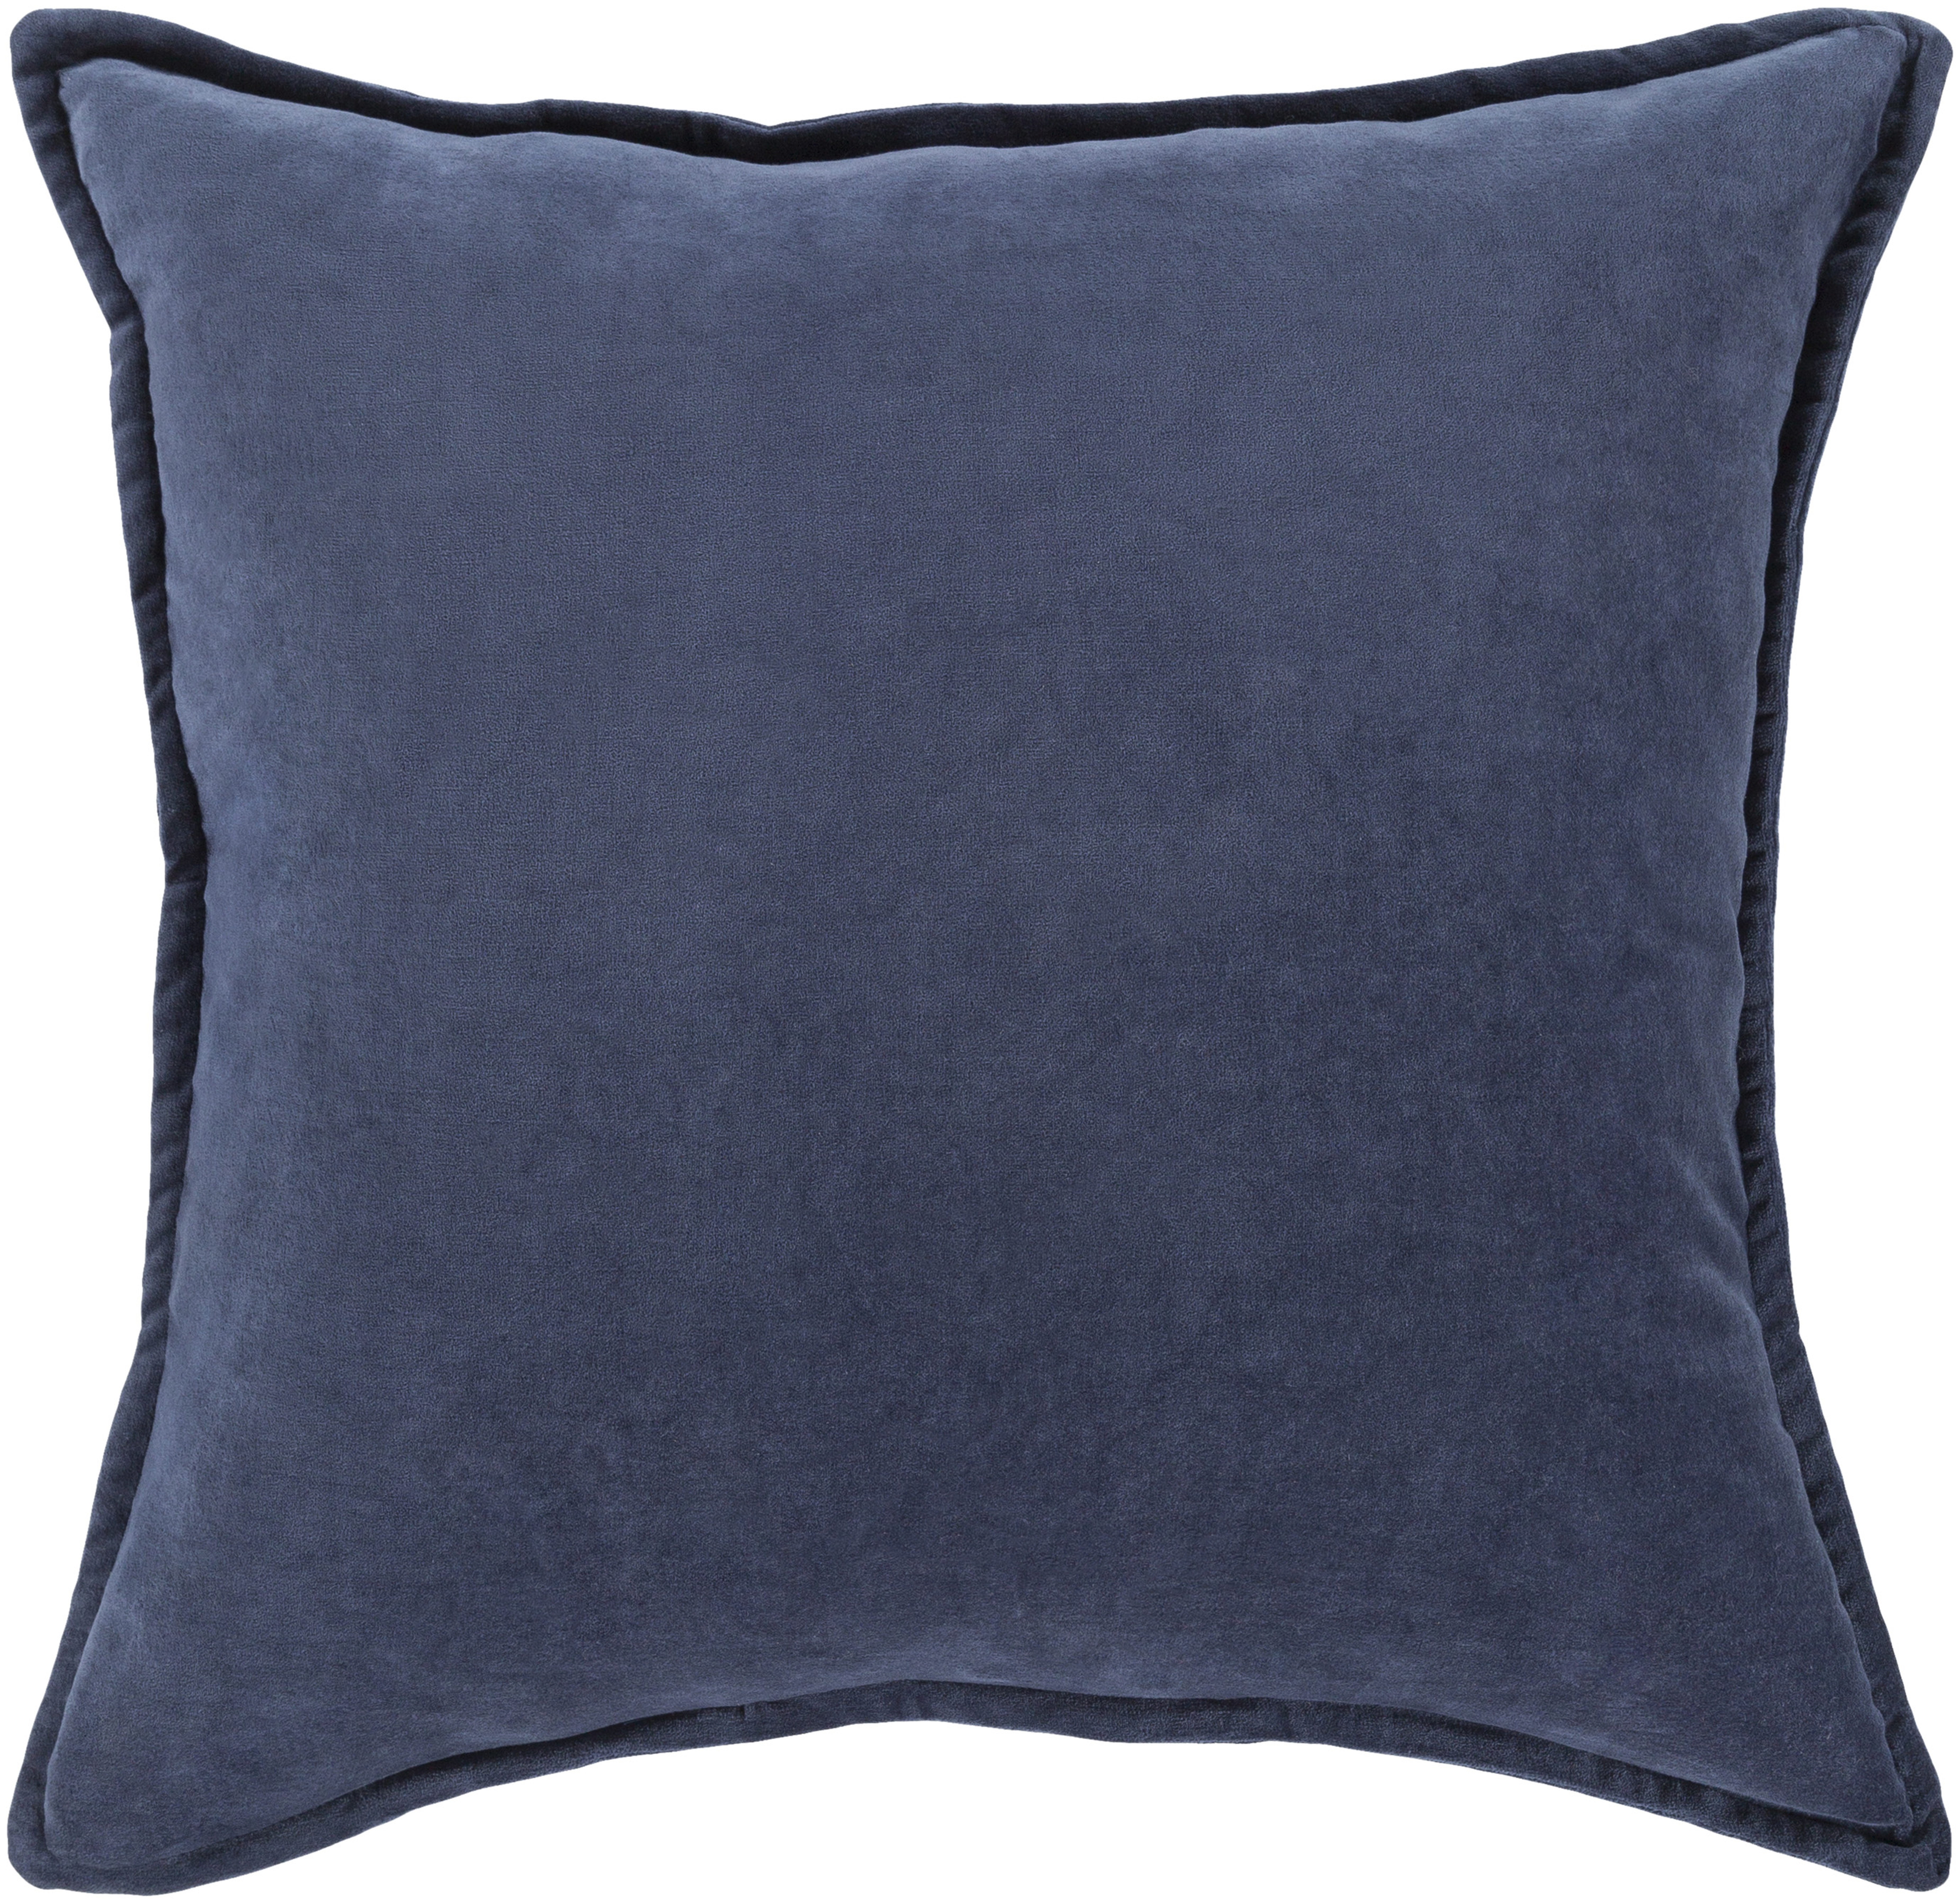 Cotton Velvet Pillow - 22x22" with Poly Insert - Neva Home